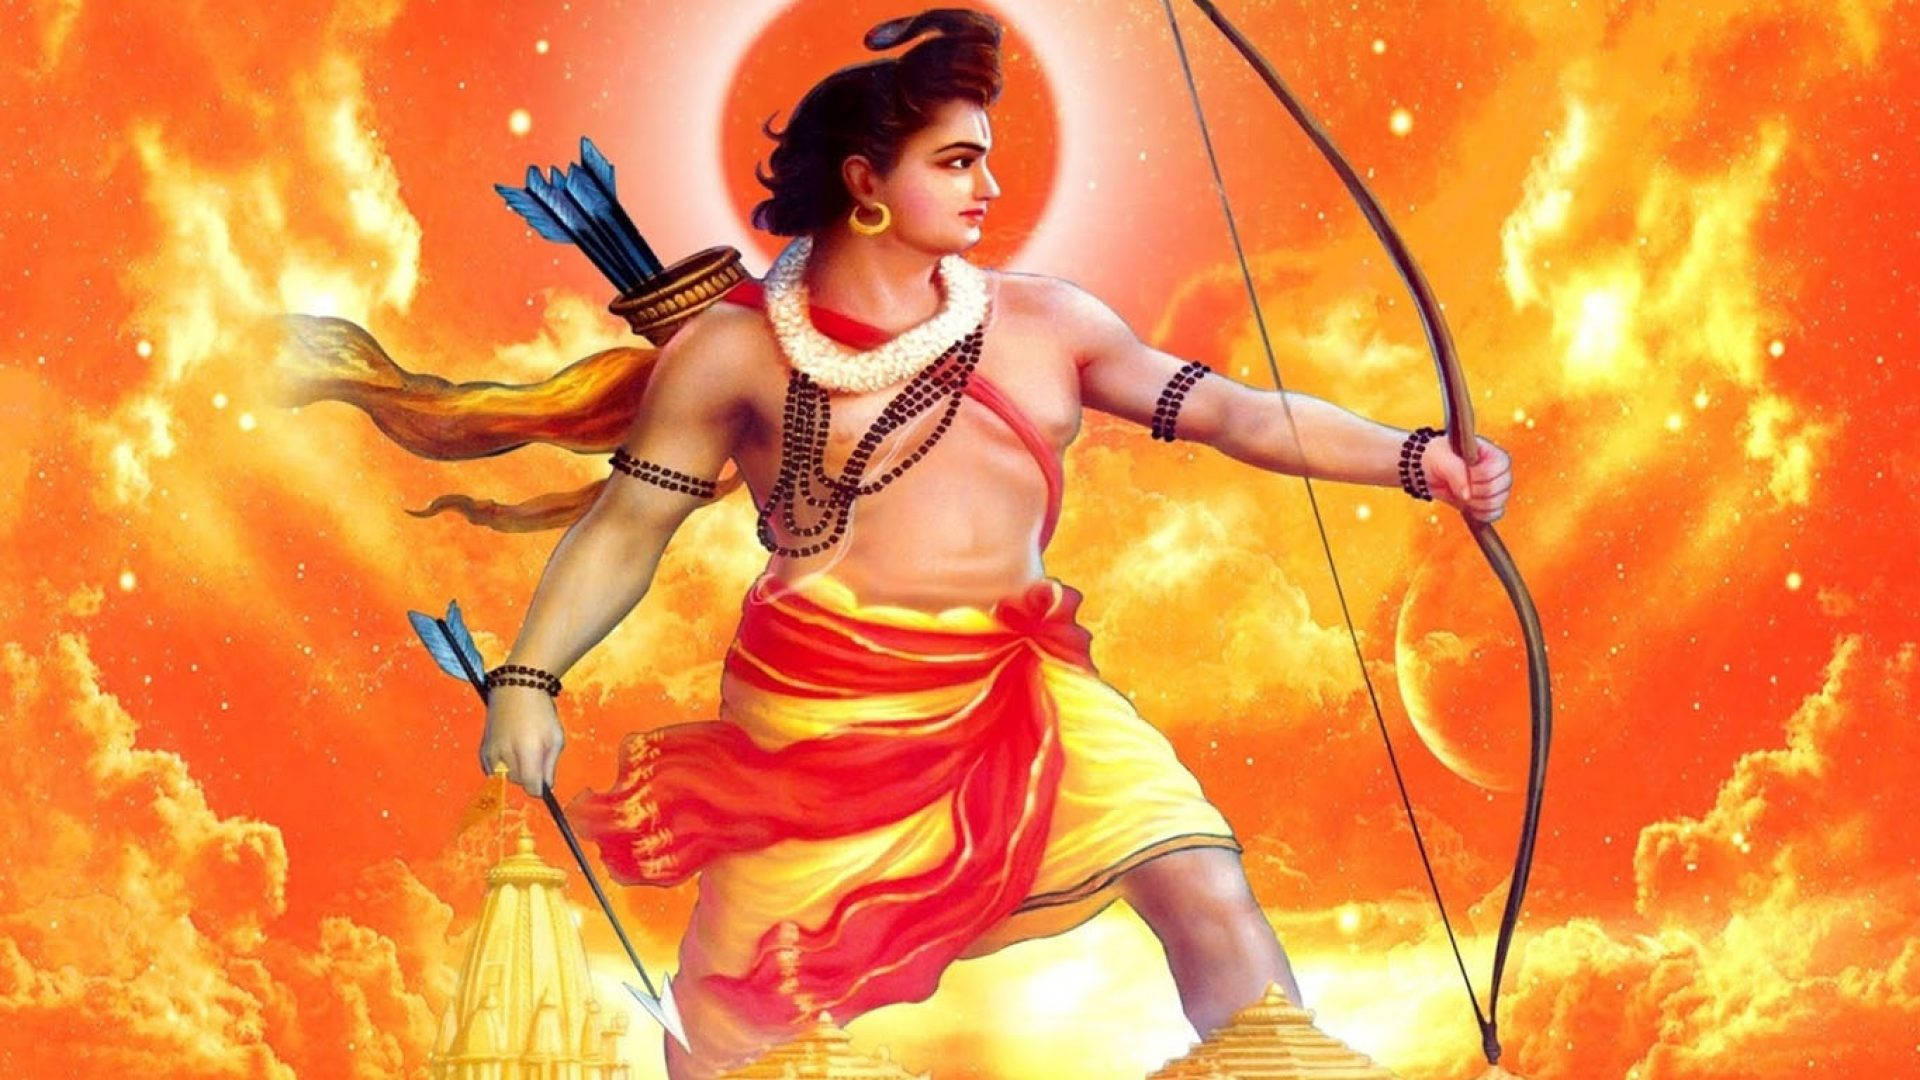 Ram Ji With Fiery Orange Background